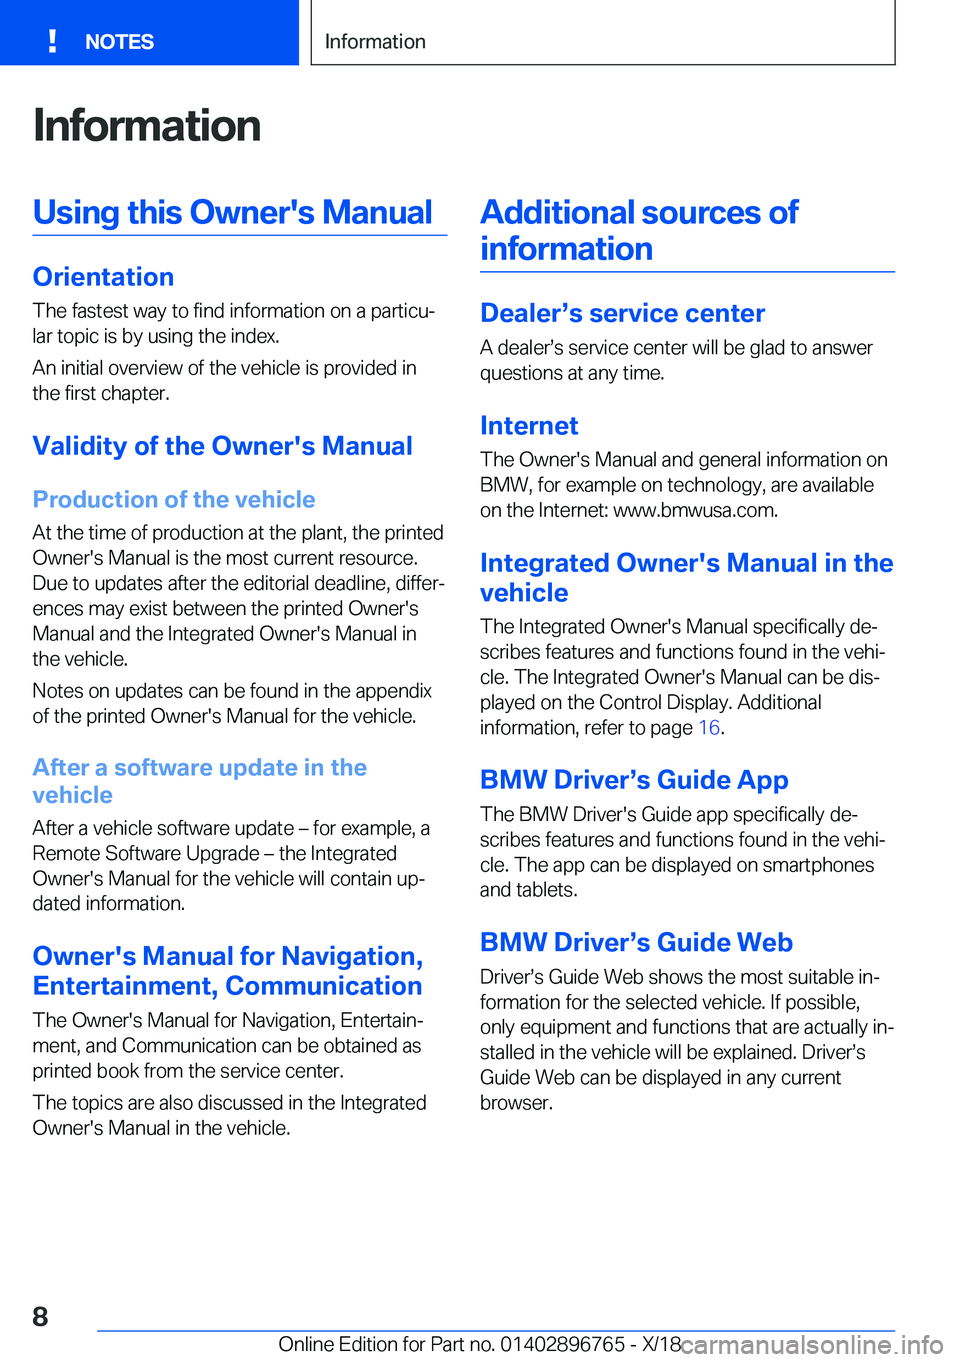 BMW X5 2019  Owners Manual �I�n�f�o�r�m�a�t�i�o�n�U�s�i�n�g��t�h�i�s��O�w�n�e�r�'�s��M�a�n�u�a�l
�O�r�i�e�n�t�a�t�i�o�n�T�h�e��f�a�s�t�e�s�t��w�a�y��t�o��f�i�n�d��i�n�f�o�r�m�a�t�i�o�n��o�n��a��p�a�r�t�i�c�uj�l�